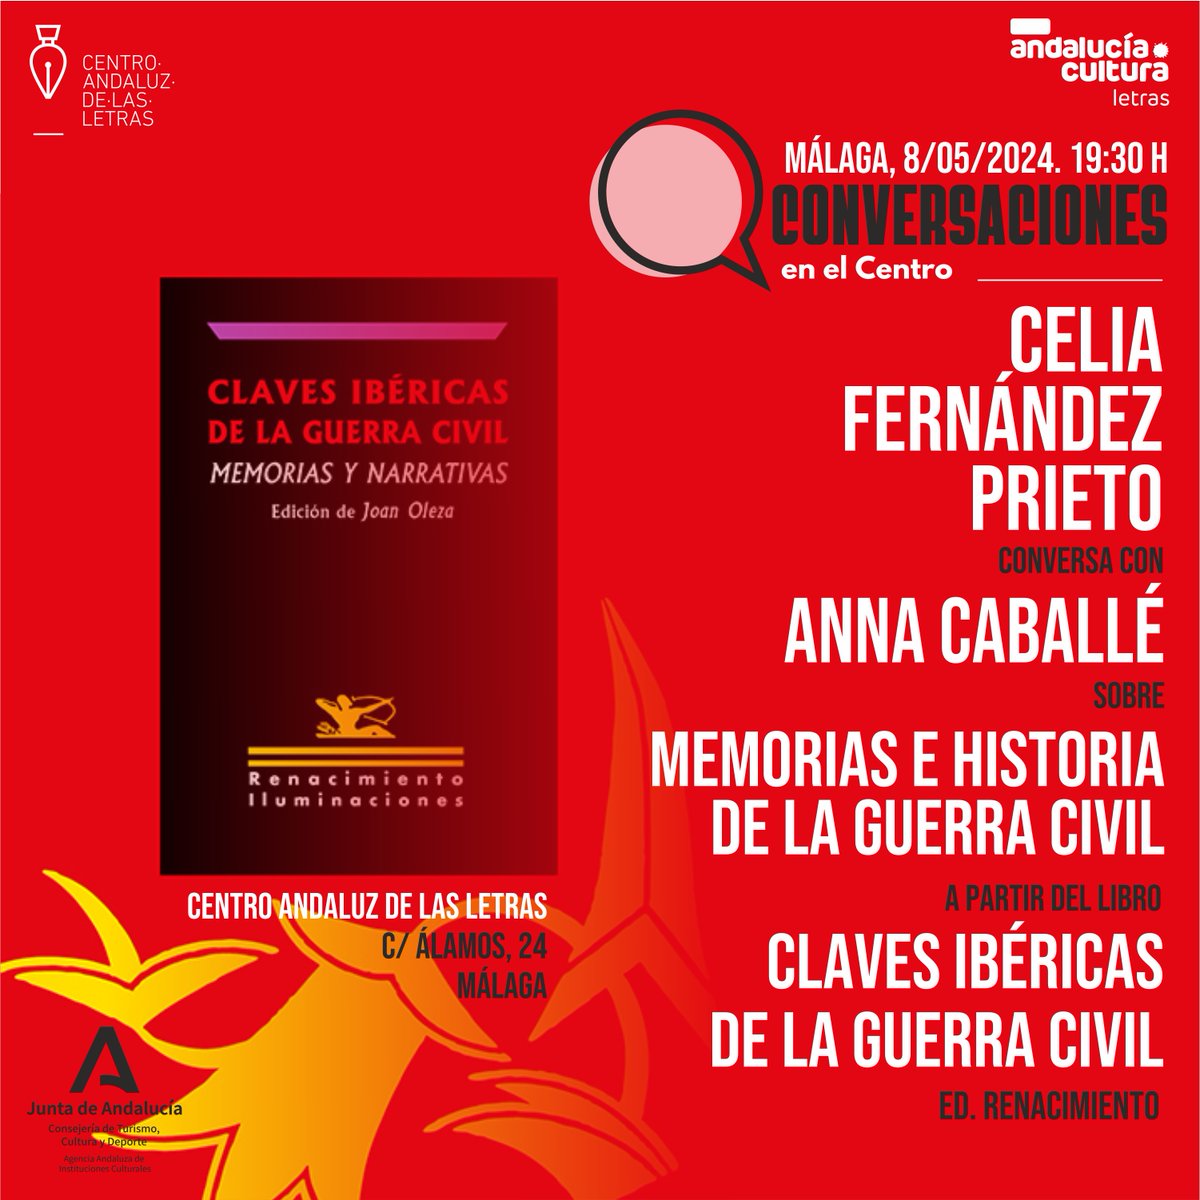 #HOY 📚@letrasandalucia te invita en #Málaga a una conversación entre Celia Fernández y Anna Caballé sobre memorias y narrativas de la Guerra Civil. 📌19:30h Entrada libre hasta completar aforo. lajunta.es/4rubd @CulturaAND @MalagaJunta @RENACIMIENTOED